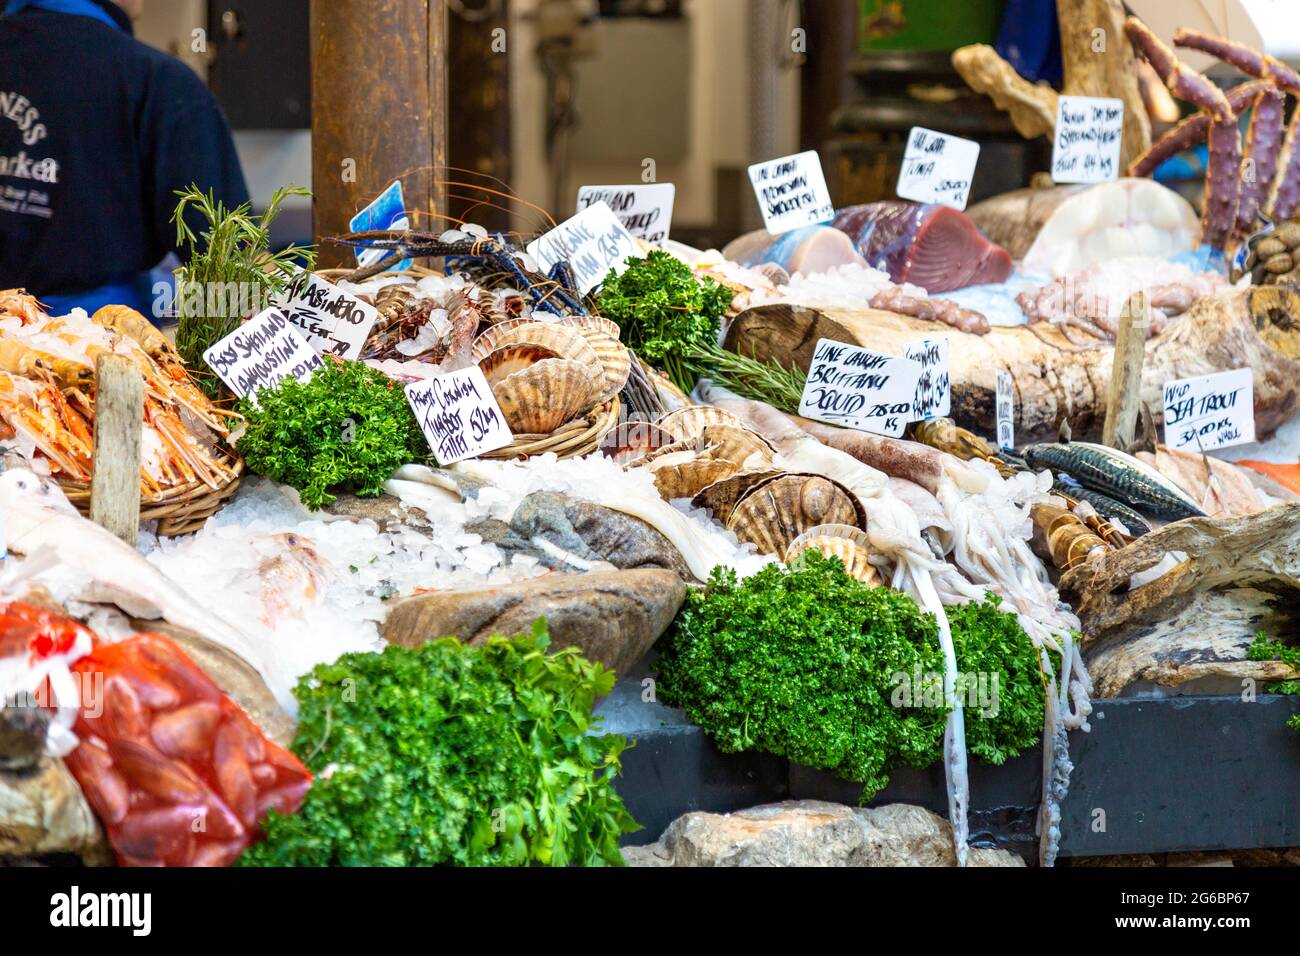 Meeresfrüchte und Fisch am Stand der Furness Fish Markets am Borough Market, London Bridge, London, Großbritannien Stockfoto